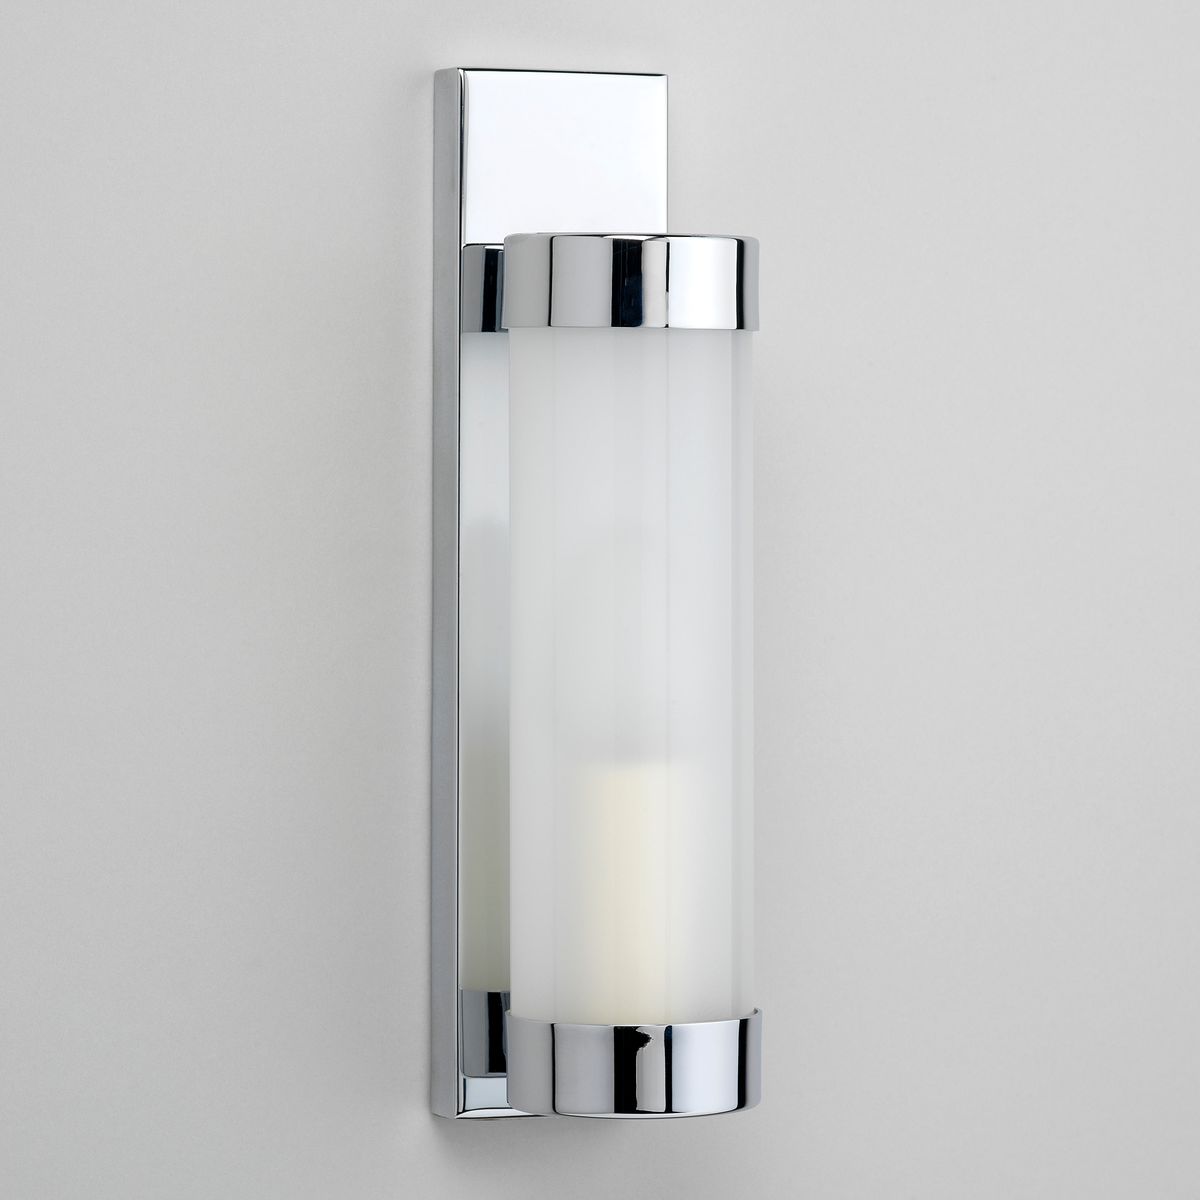 Chrome and opaque glass art deco bathroom light detail